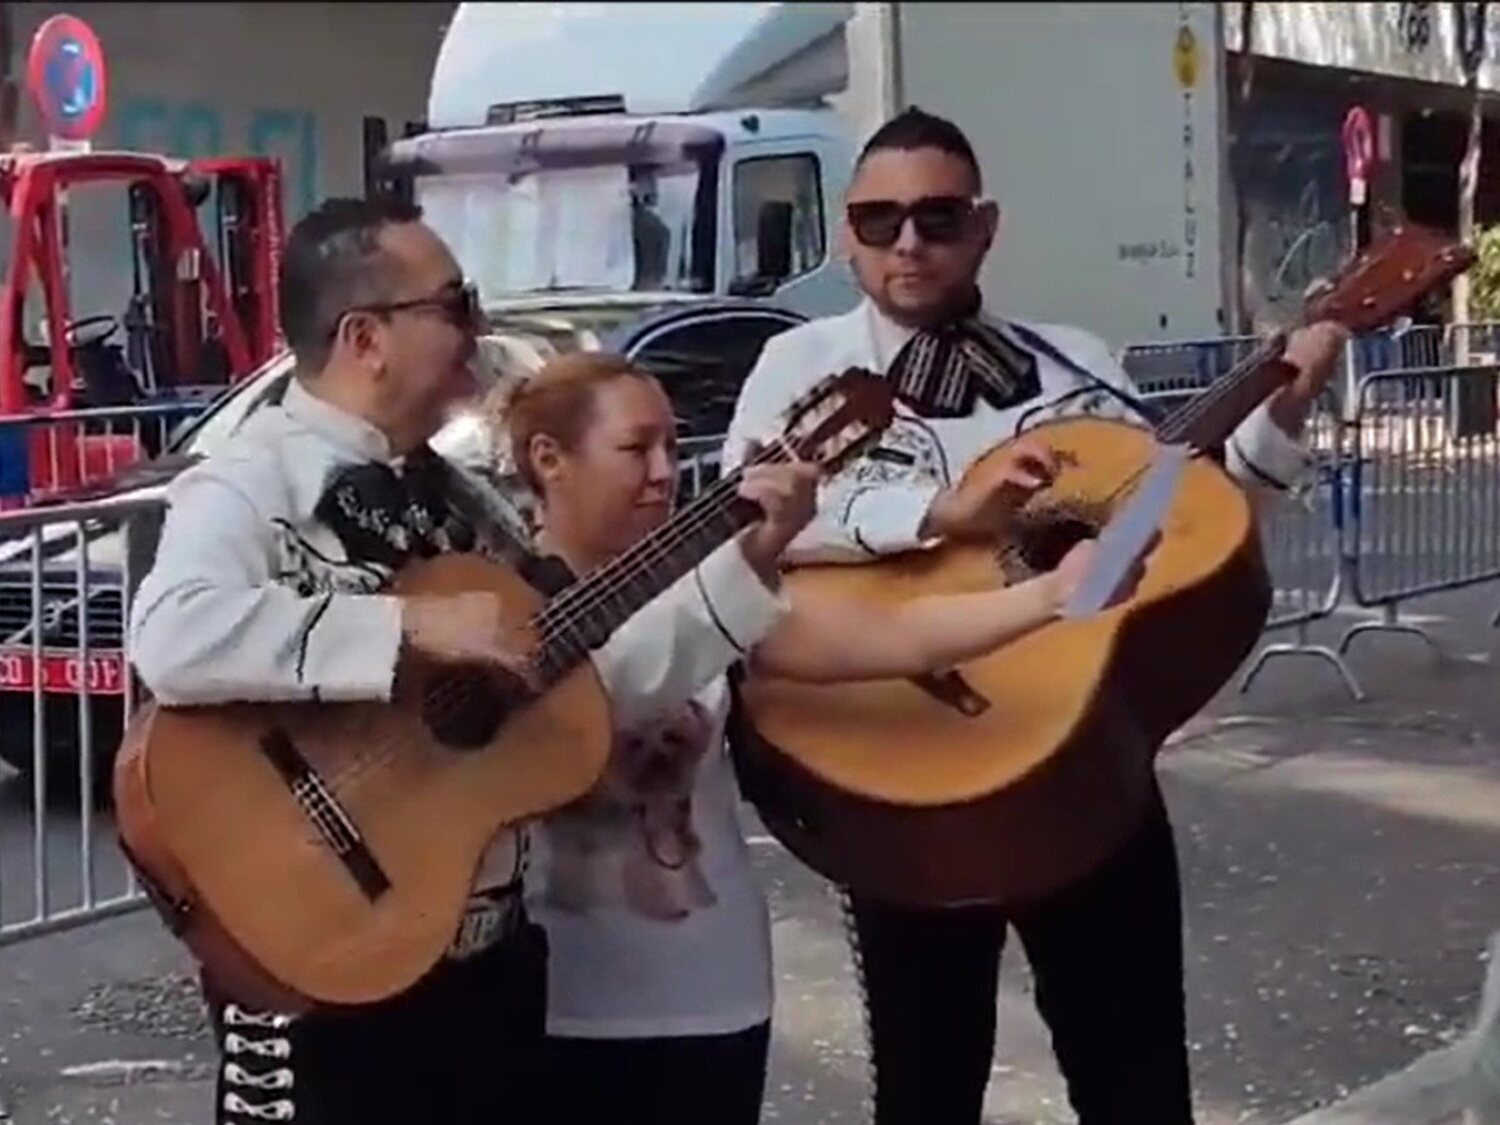 Mandan unos mariachis a la sede del Partido Popular a cantar un "narcocorrido"